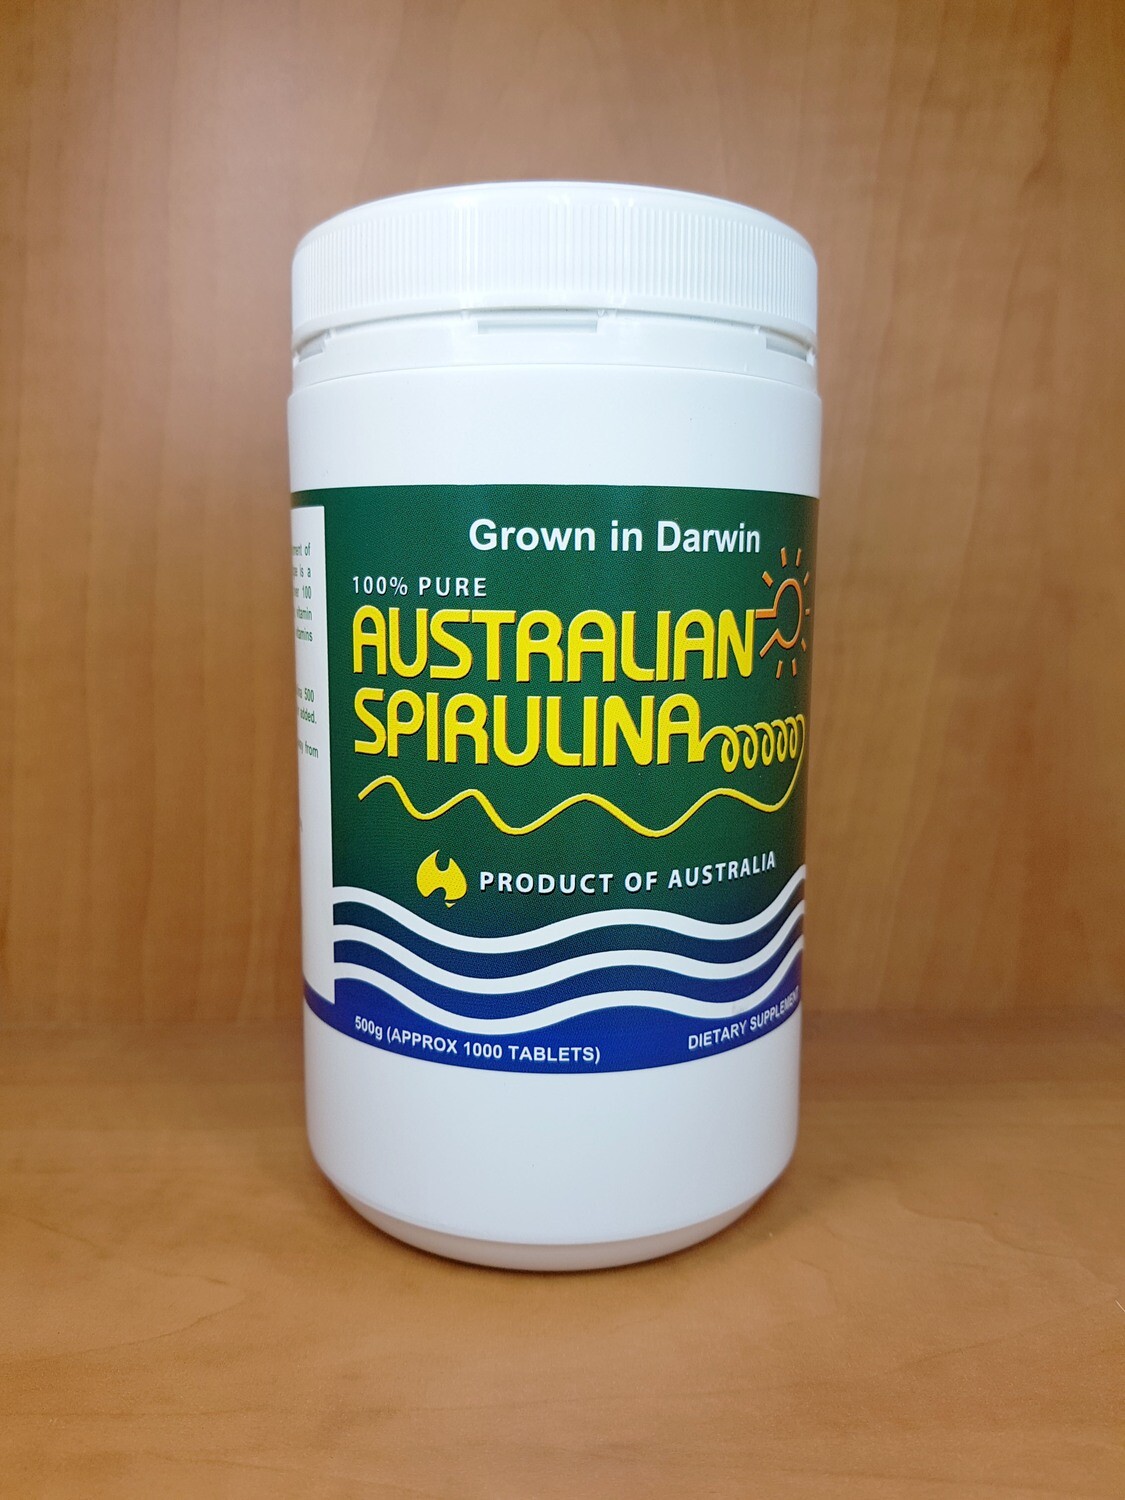 Australian Spirulina 500g (1000 tablets)